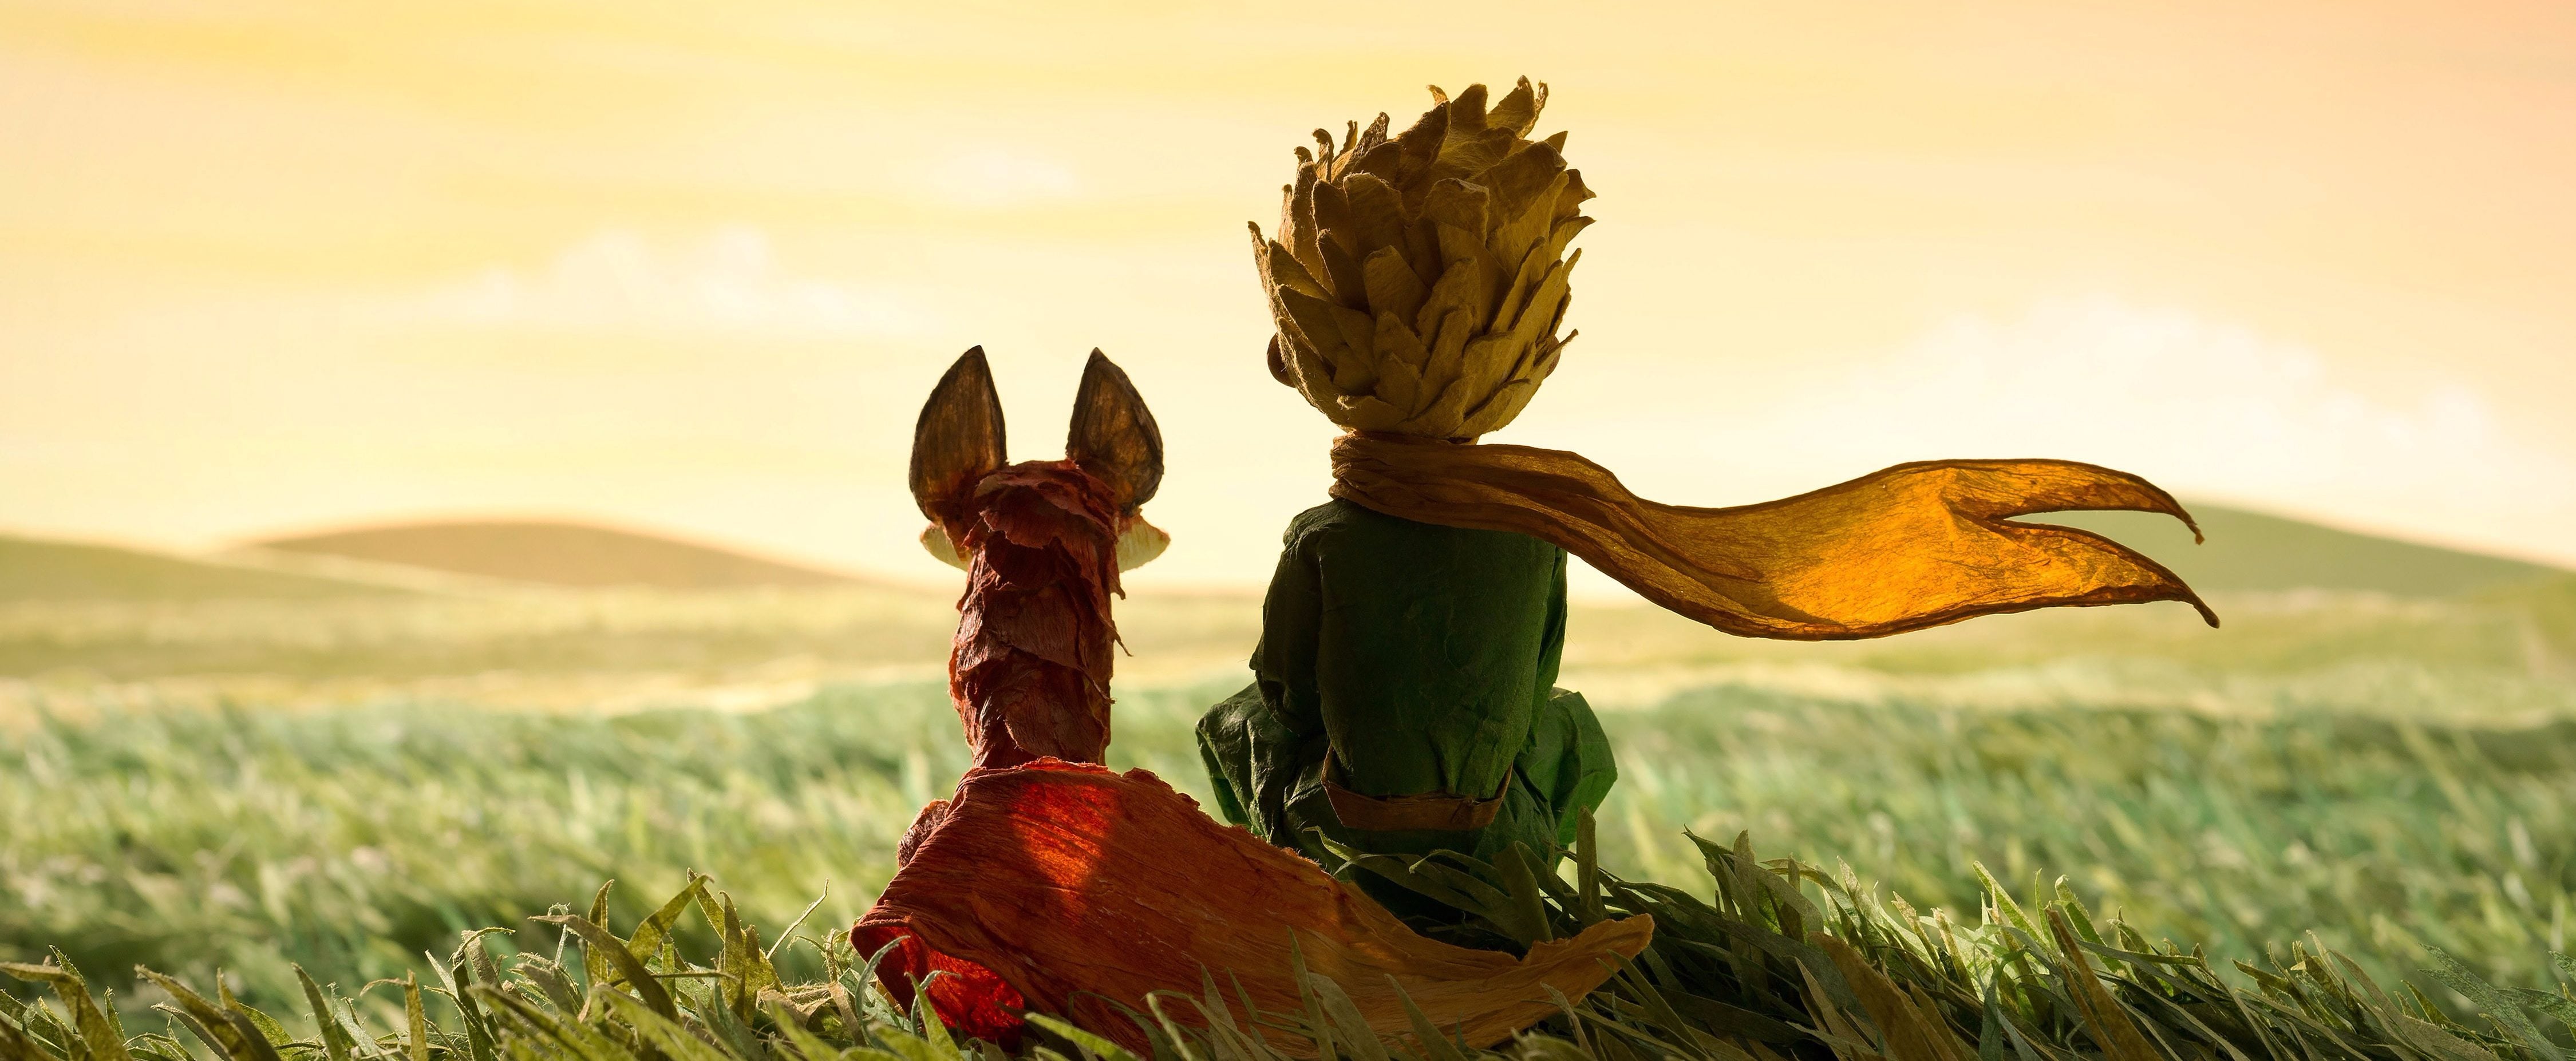 Le livre préféré d'Hayao Miyazaki – Le Petit Prince